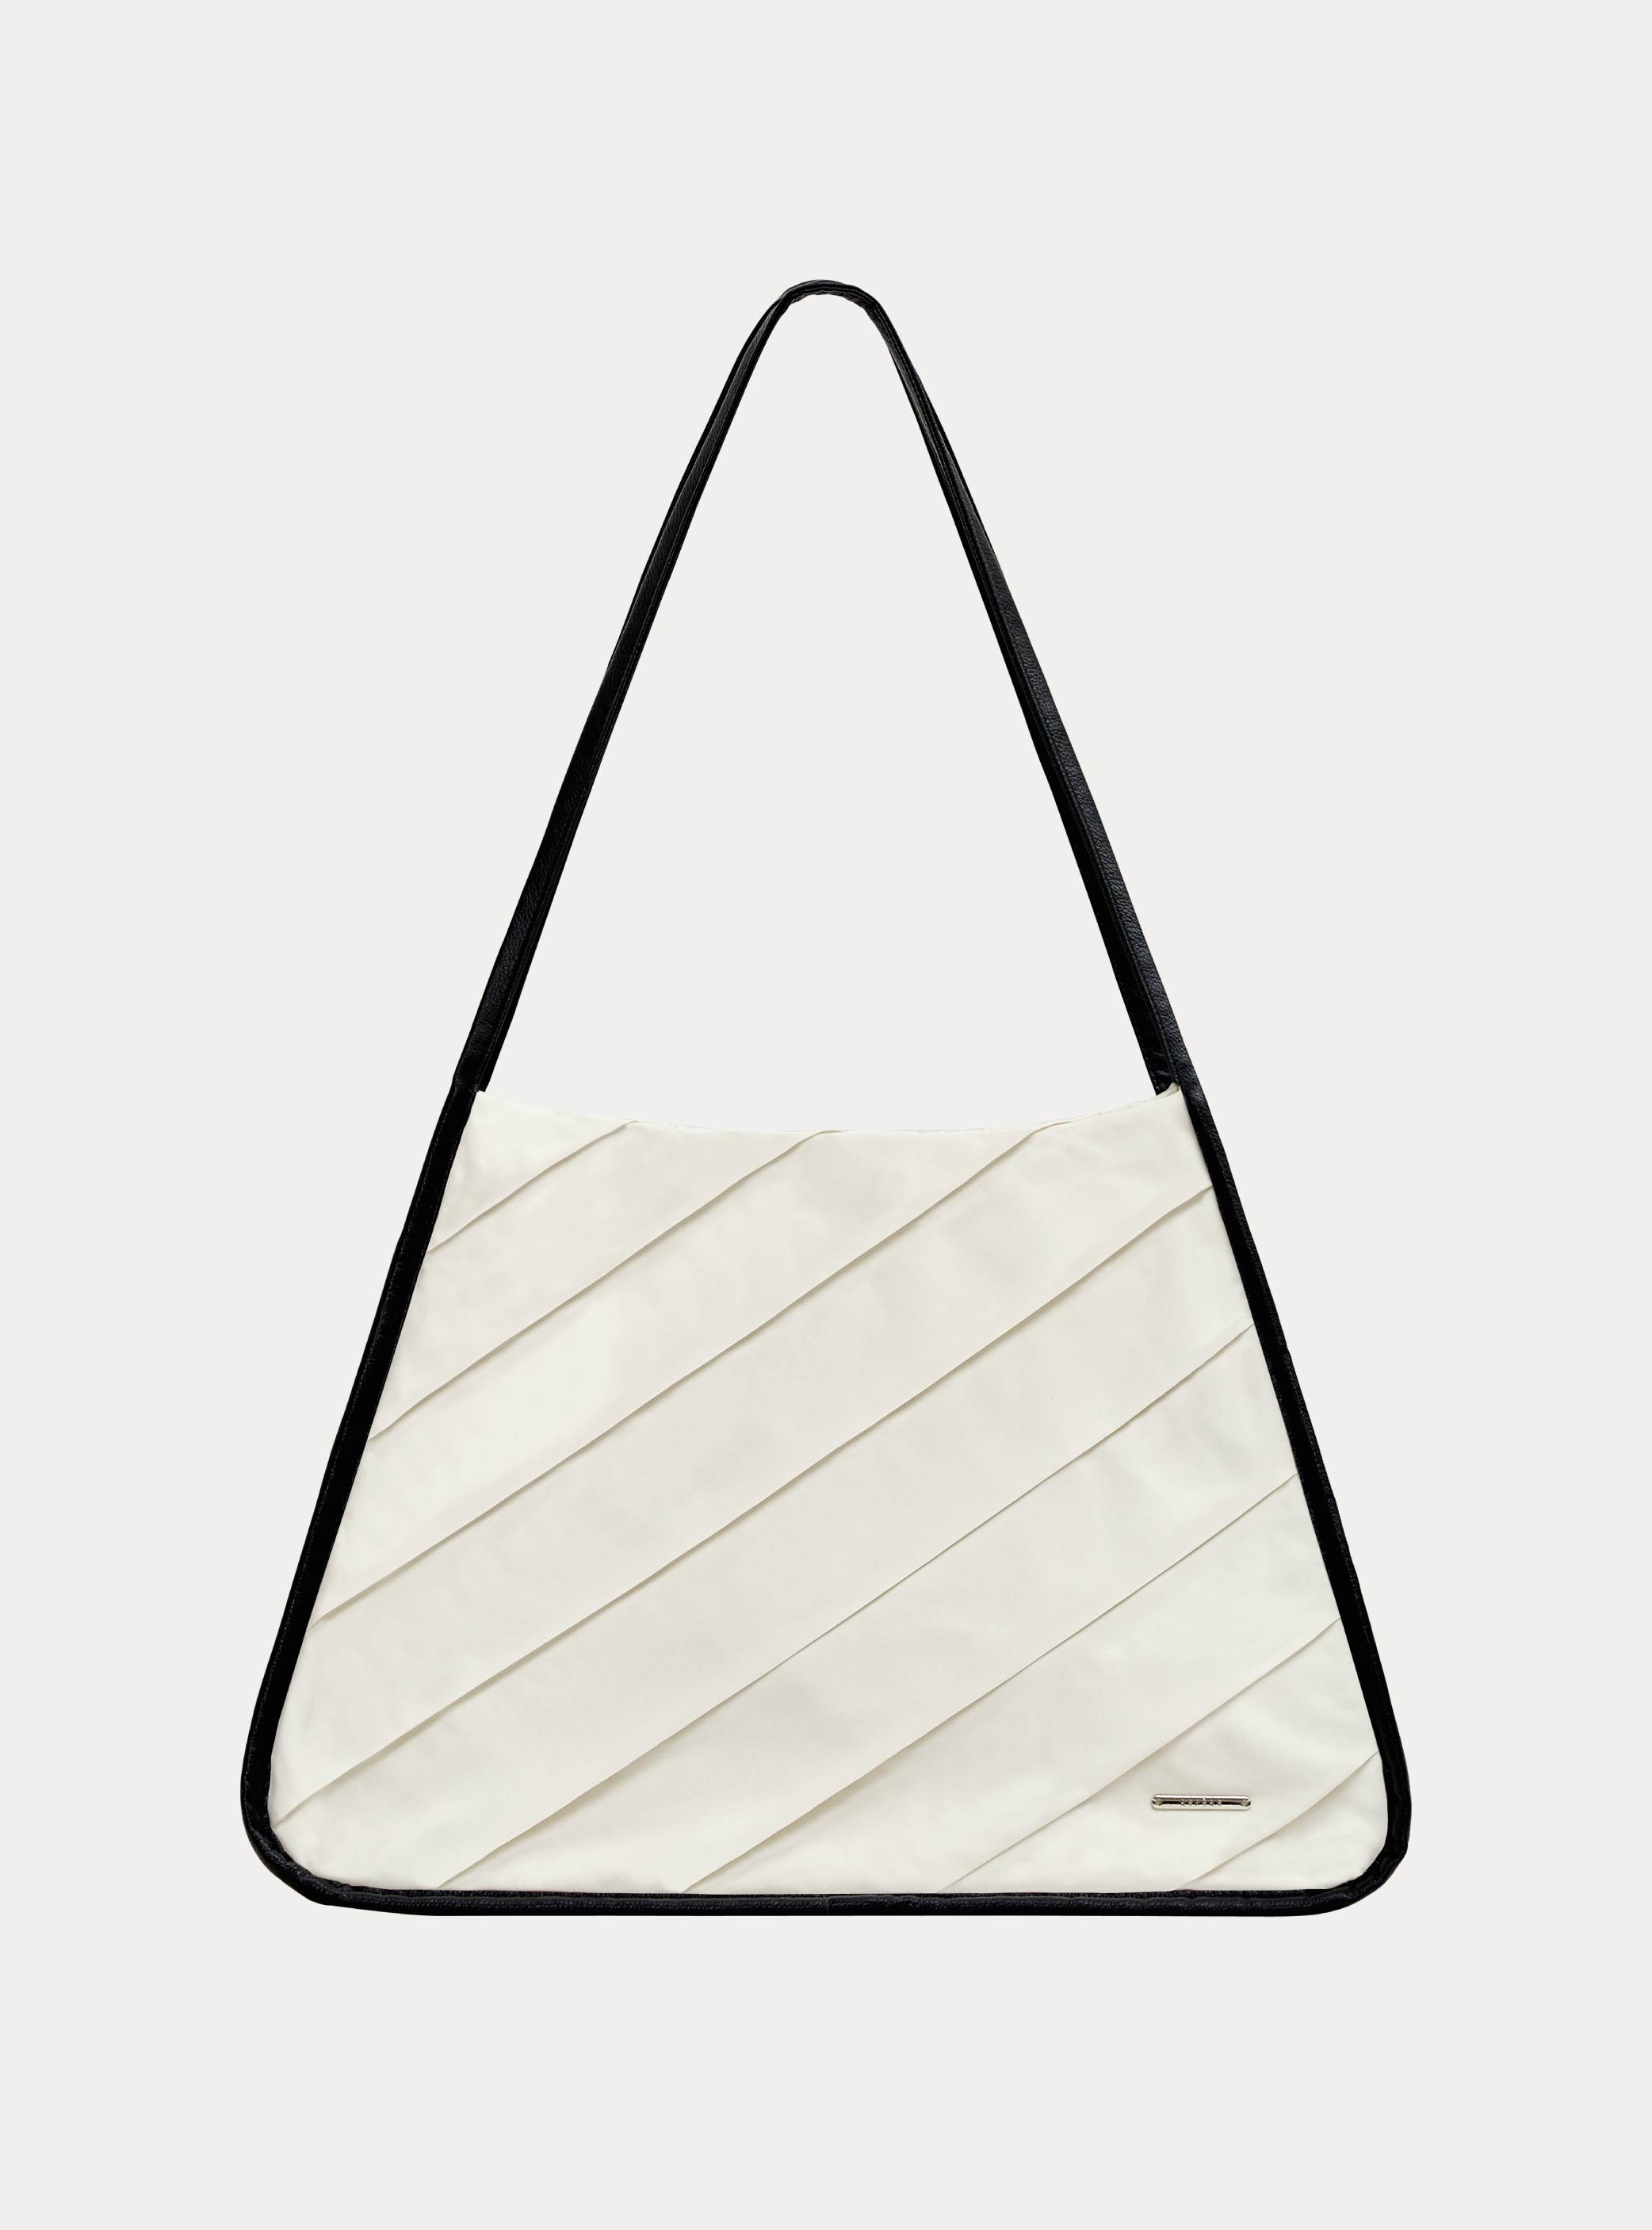 이그리트 플리츠 토트백  Ygritte pleats tote bag (1color)